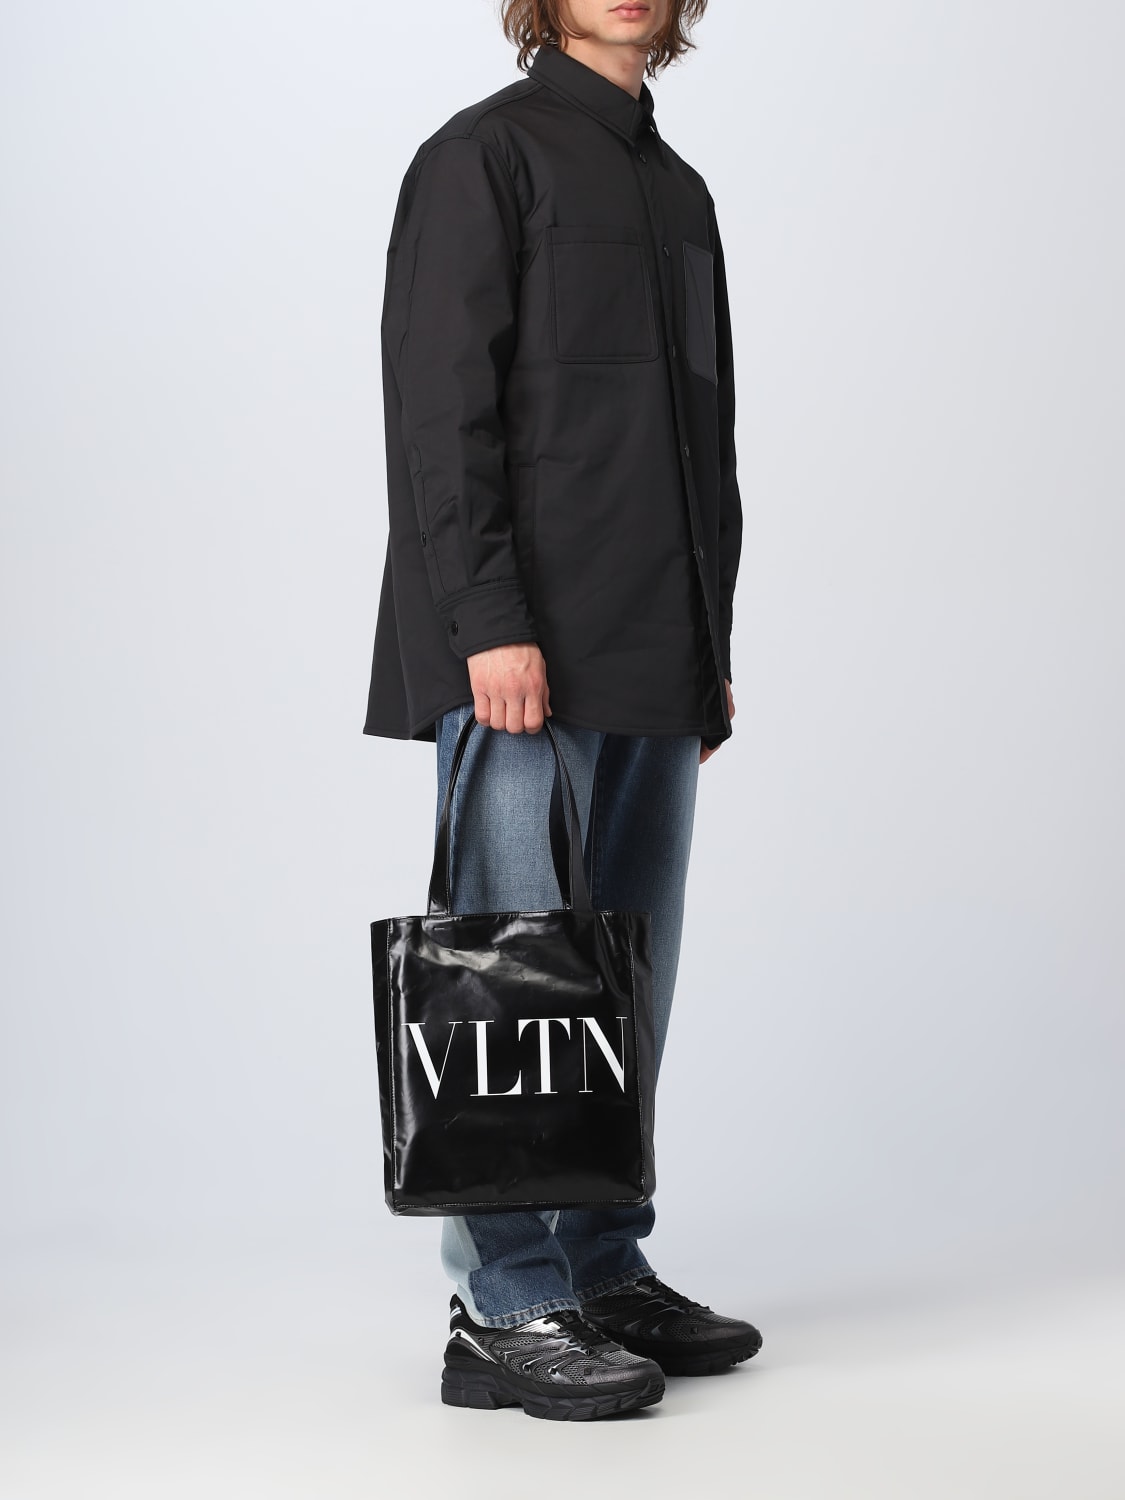 VALENTINO GARAVANI - Vltn Soft Leather Tote Bag